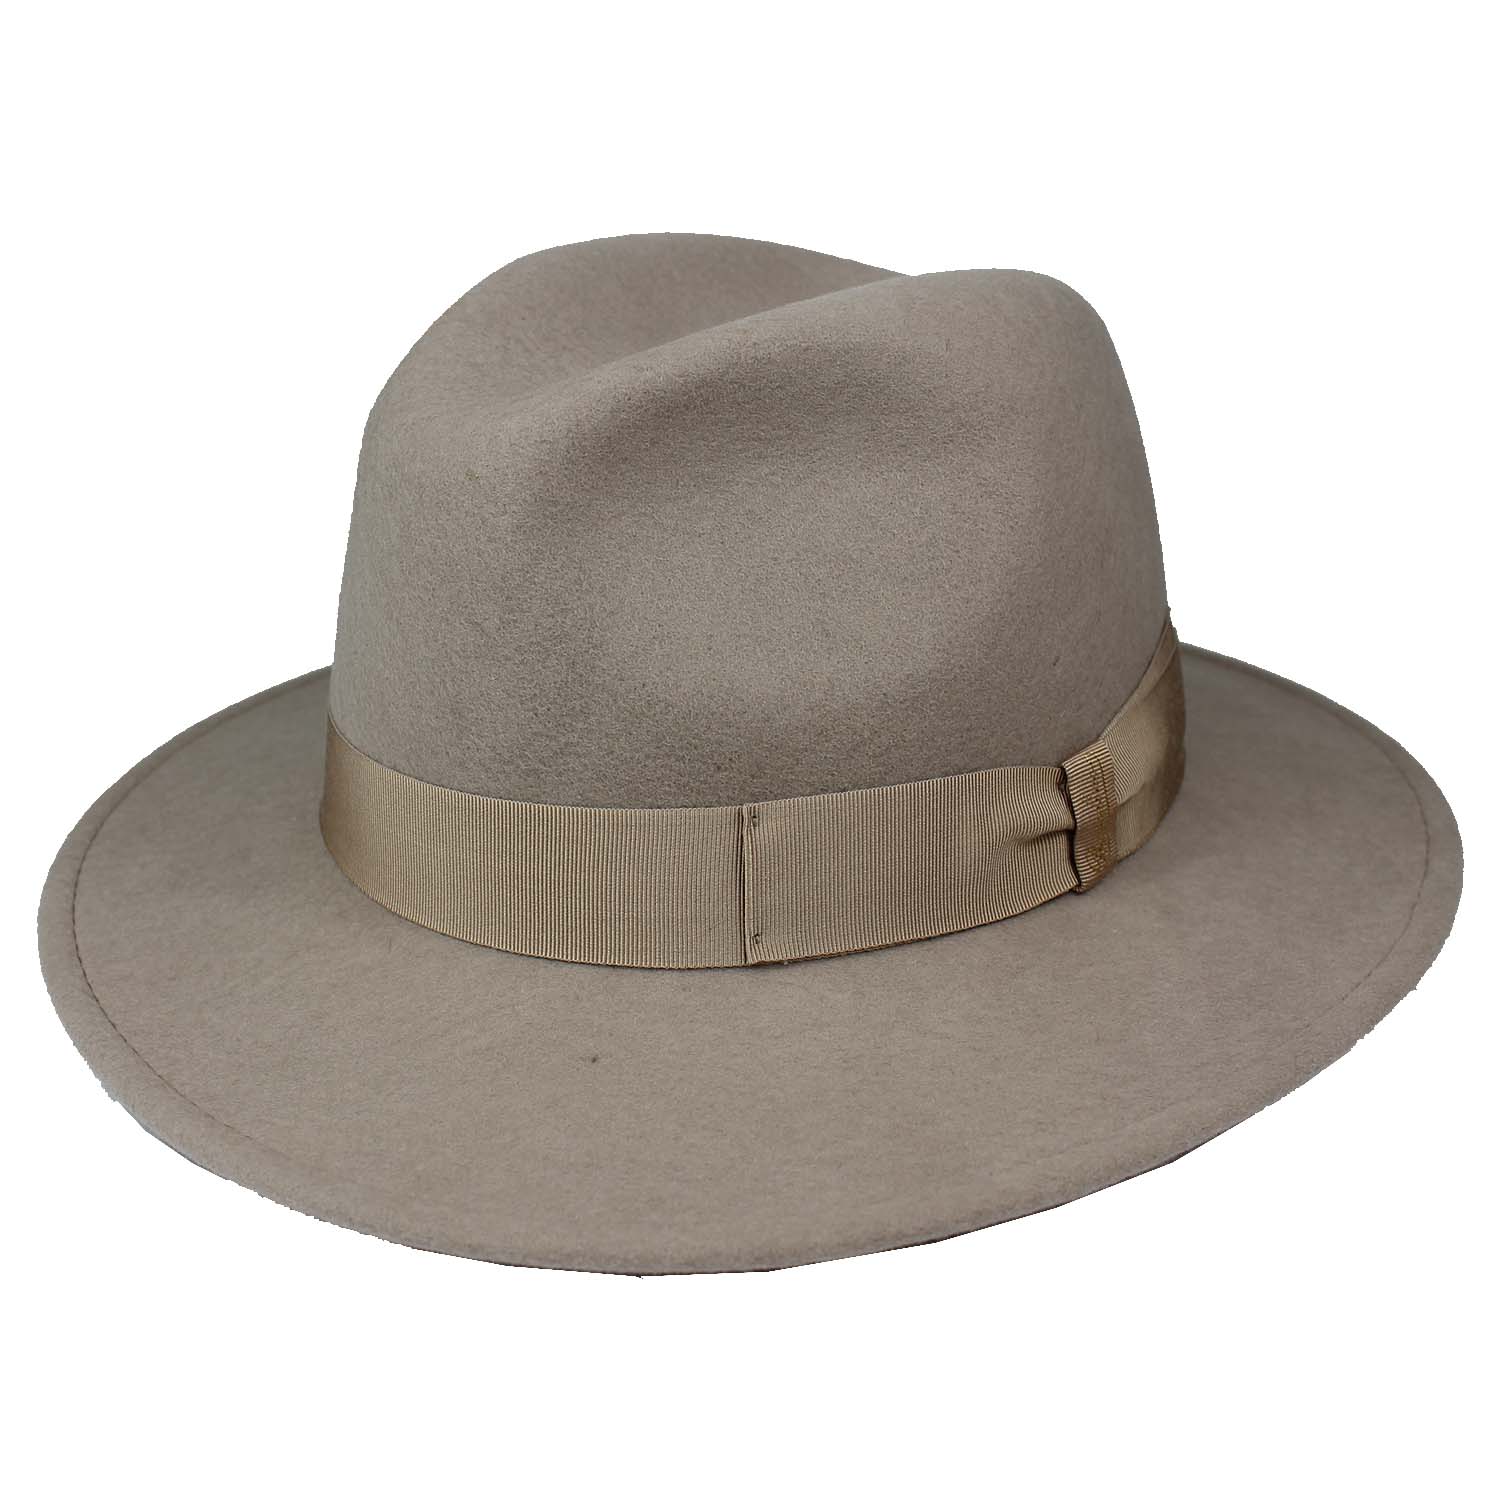 cappello-marchio-borsalino-in-feltro-a-falda-media-colore-beige